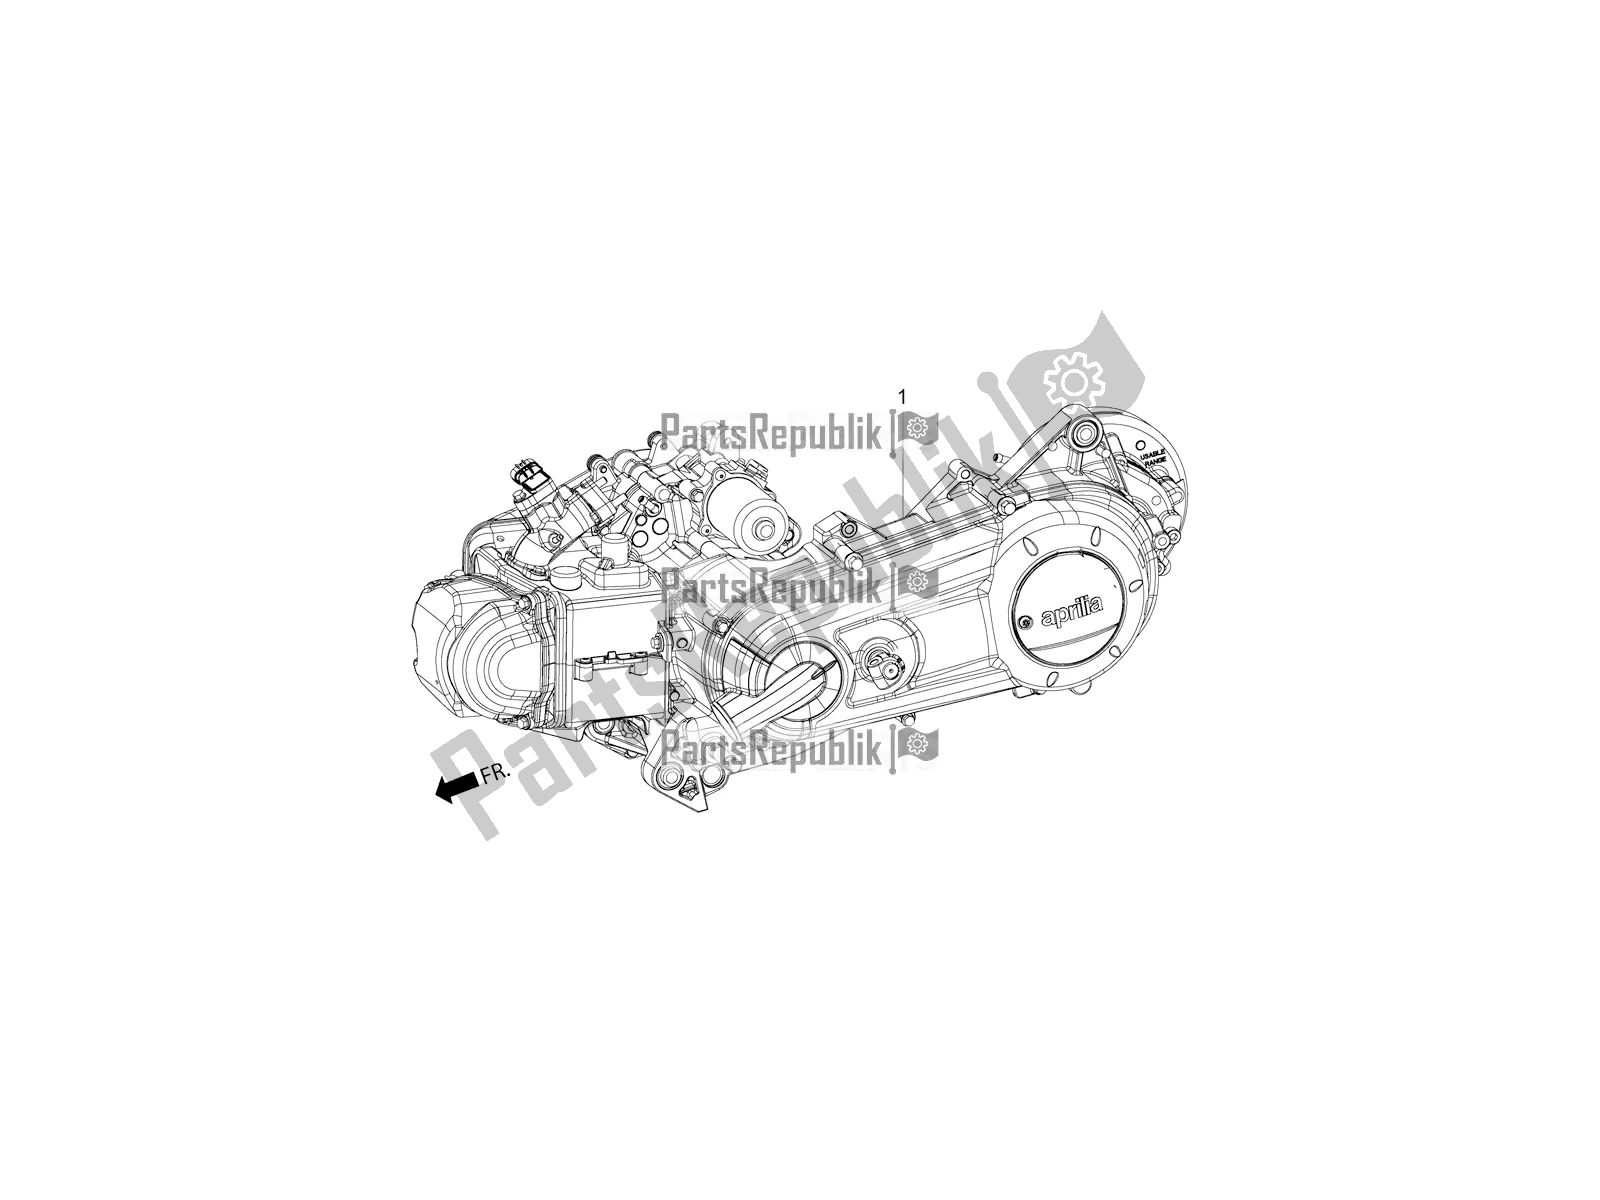 Alle onderdelen voor de Complete Engine van de Aprilia SR Motard 150 ABS Racer Carb. Latam 2018